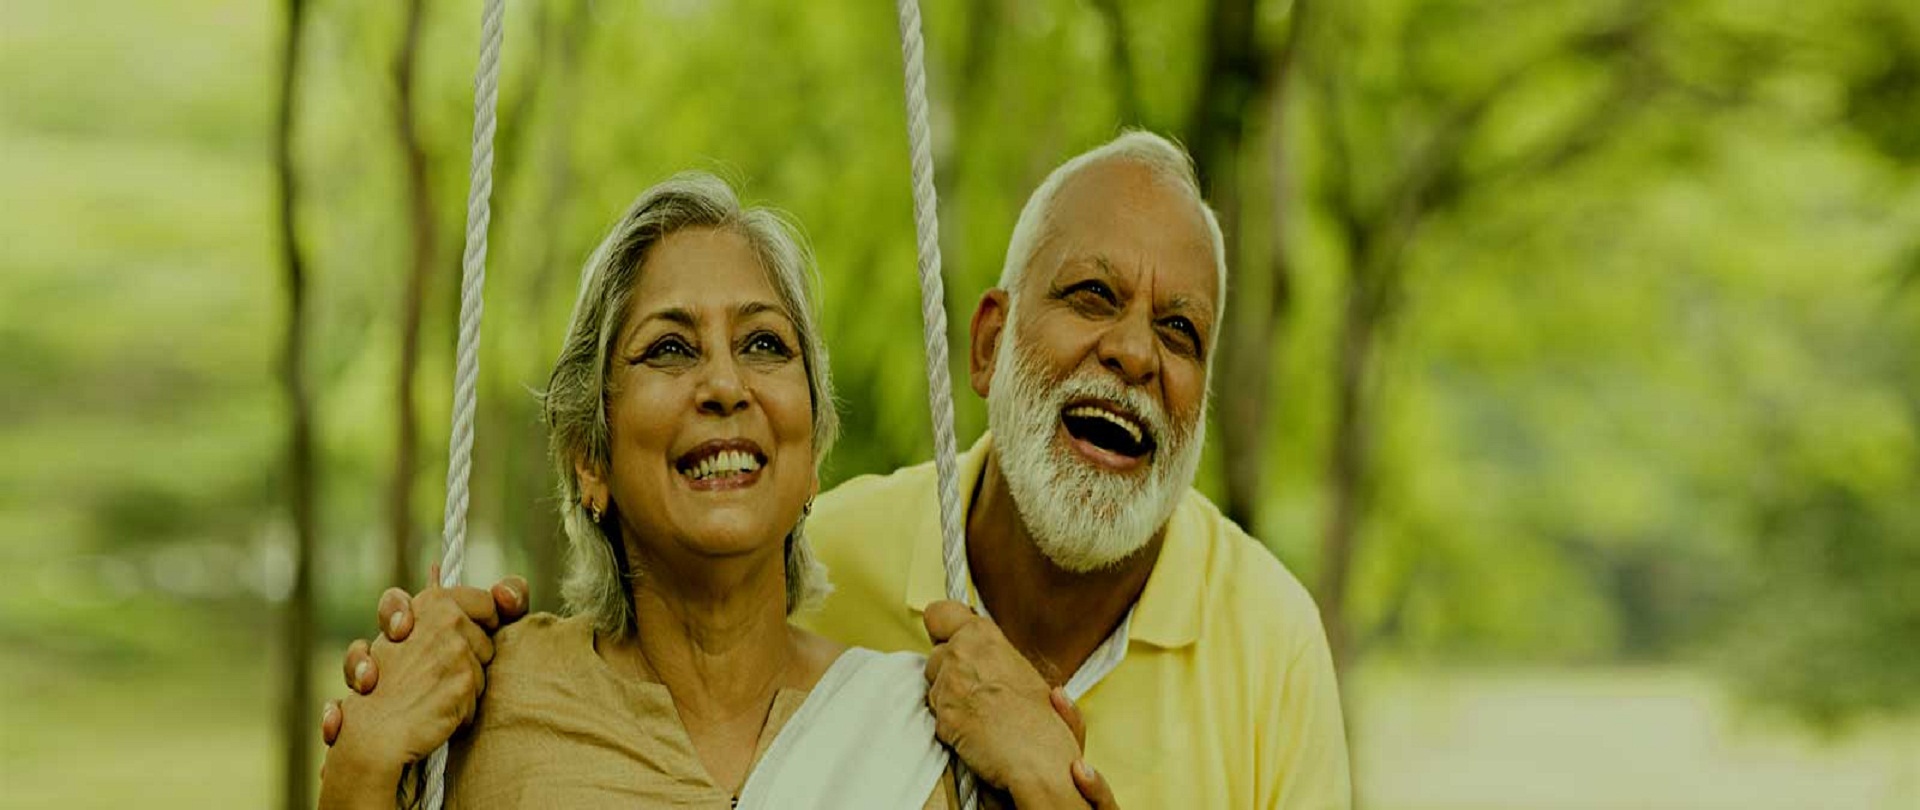 Home Elder Care Services in Kolkata